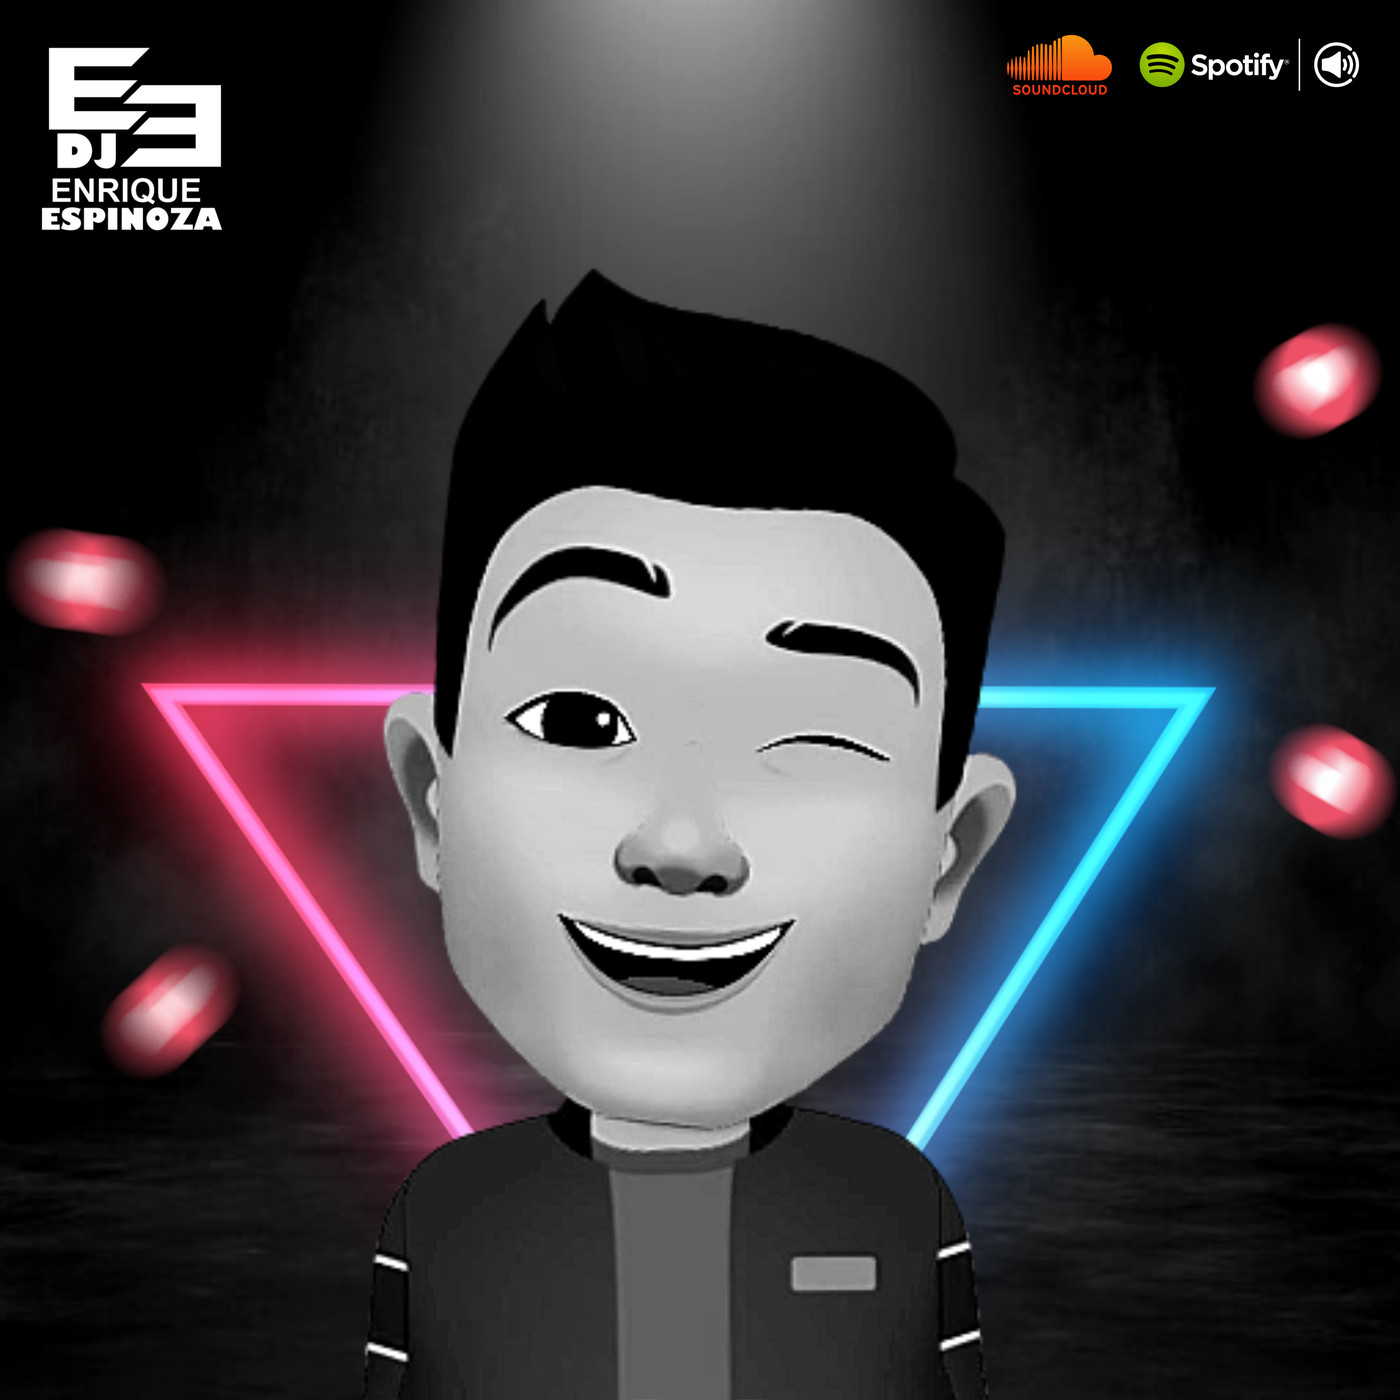 This Is The Remix - DJ Enrique Espinoza